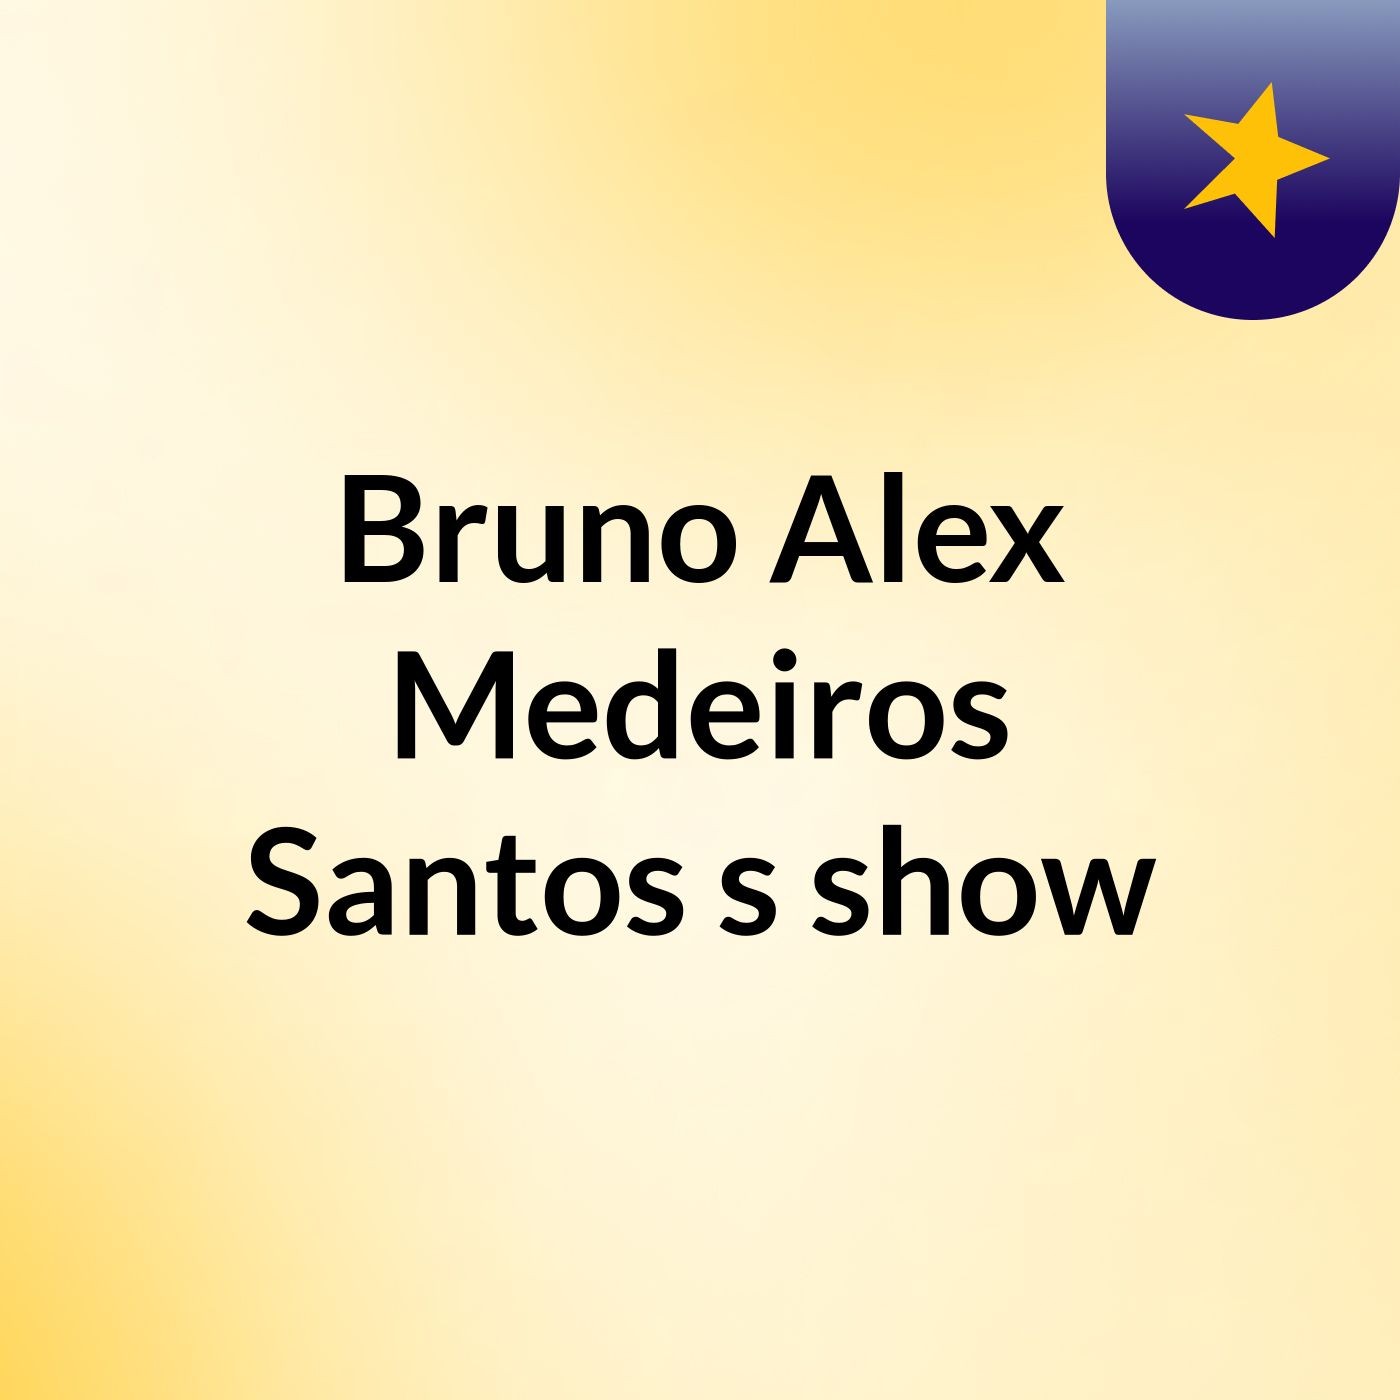 Bruno Alex Medeiros Santos's show